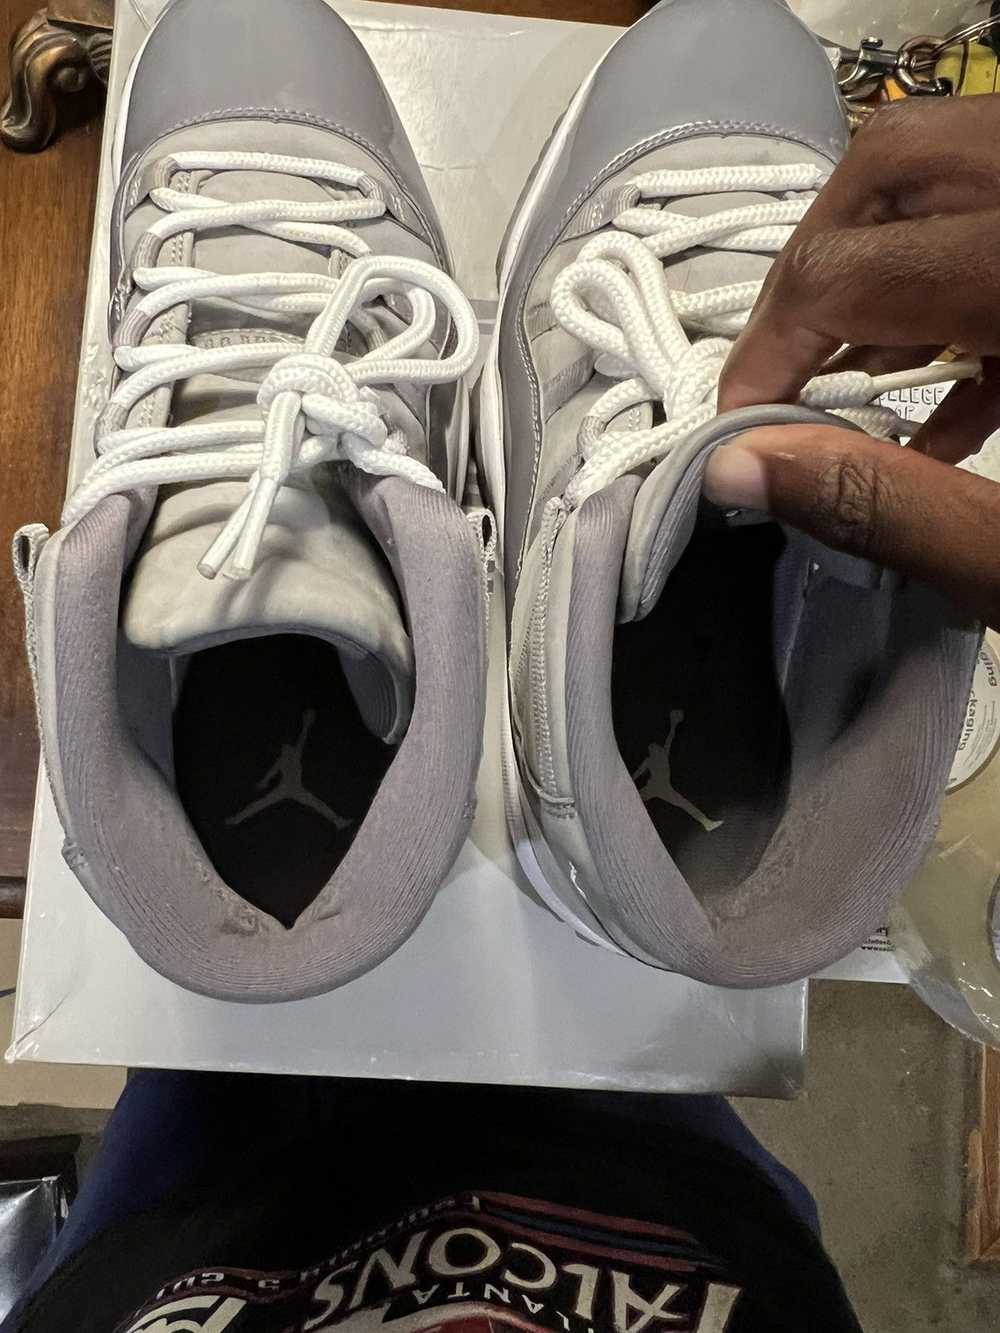 Jordan Brand × Nike Jordan 11 “Cool Grey” - image 4